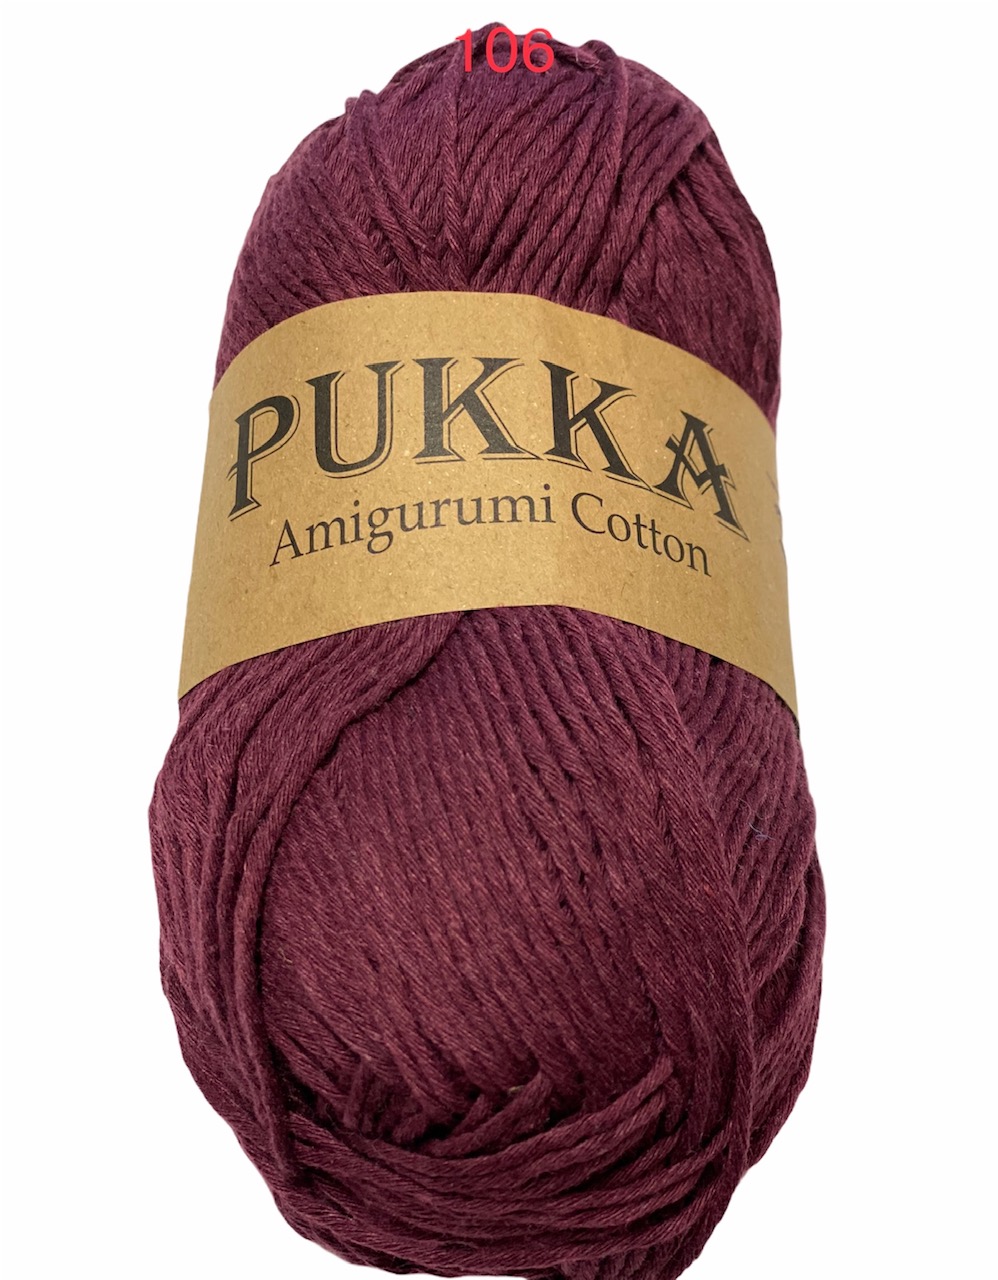 PUKKA Amigurumi Cotton 100g,106